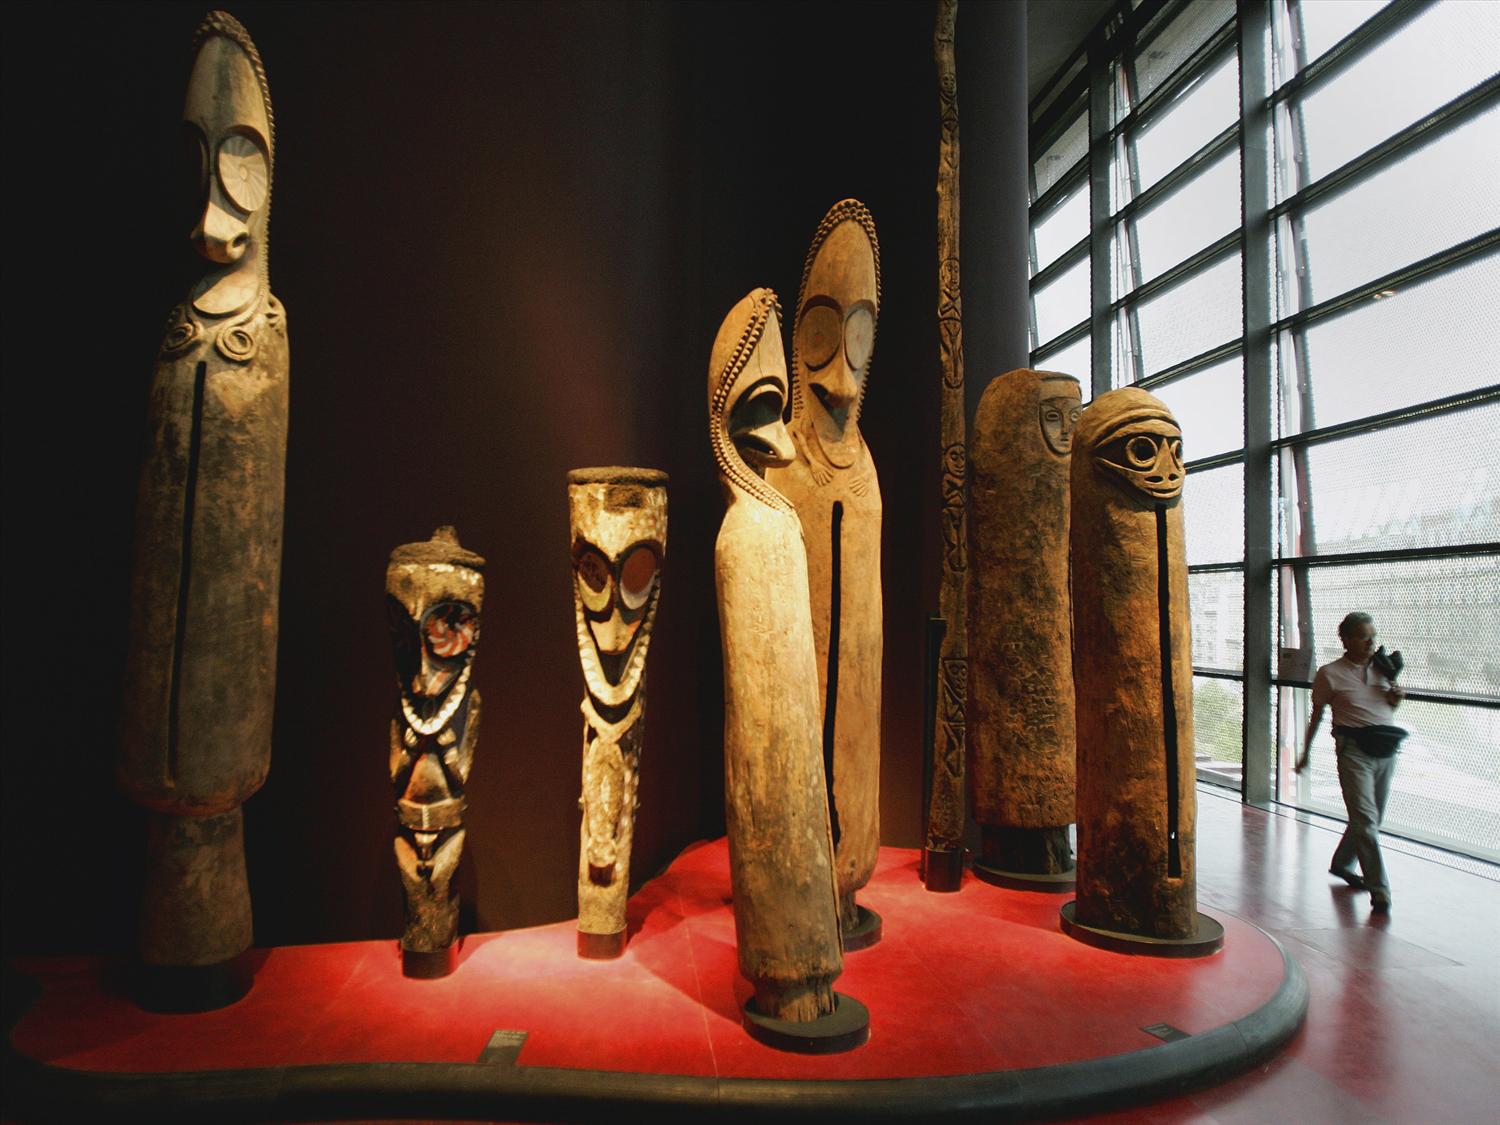 Musées français envisagent restitution d'œuvres africaines volées